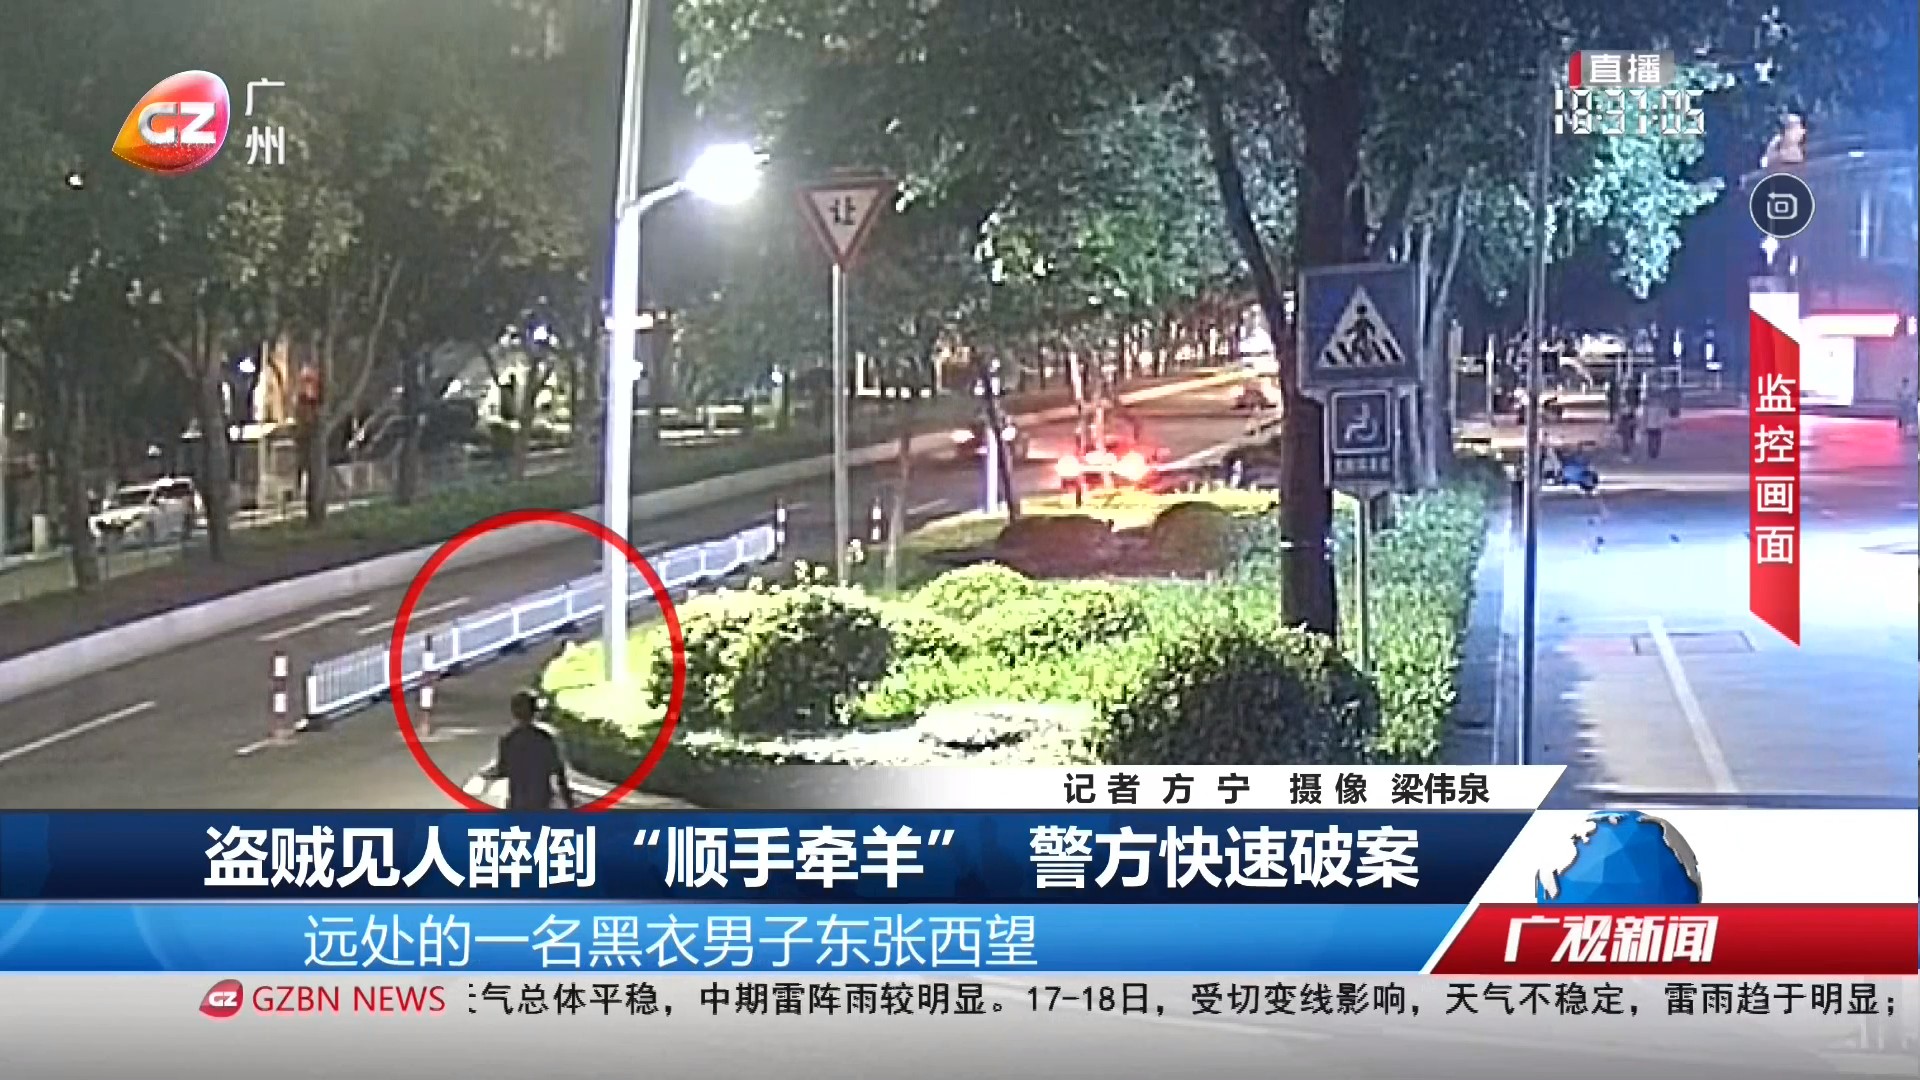 广州台综合频道 广视新闻 盗贼见人醉倒“顺手牵羊” 警方快速破案